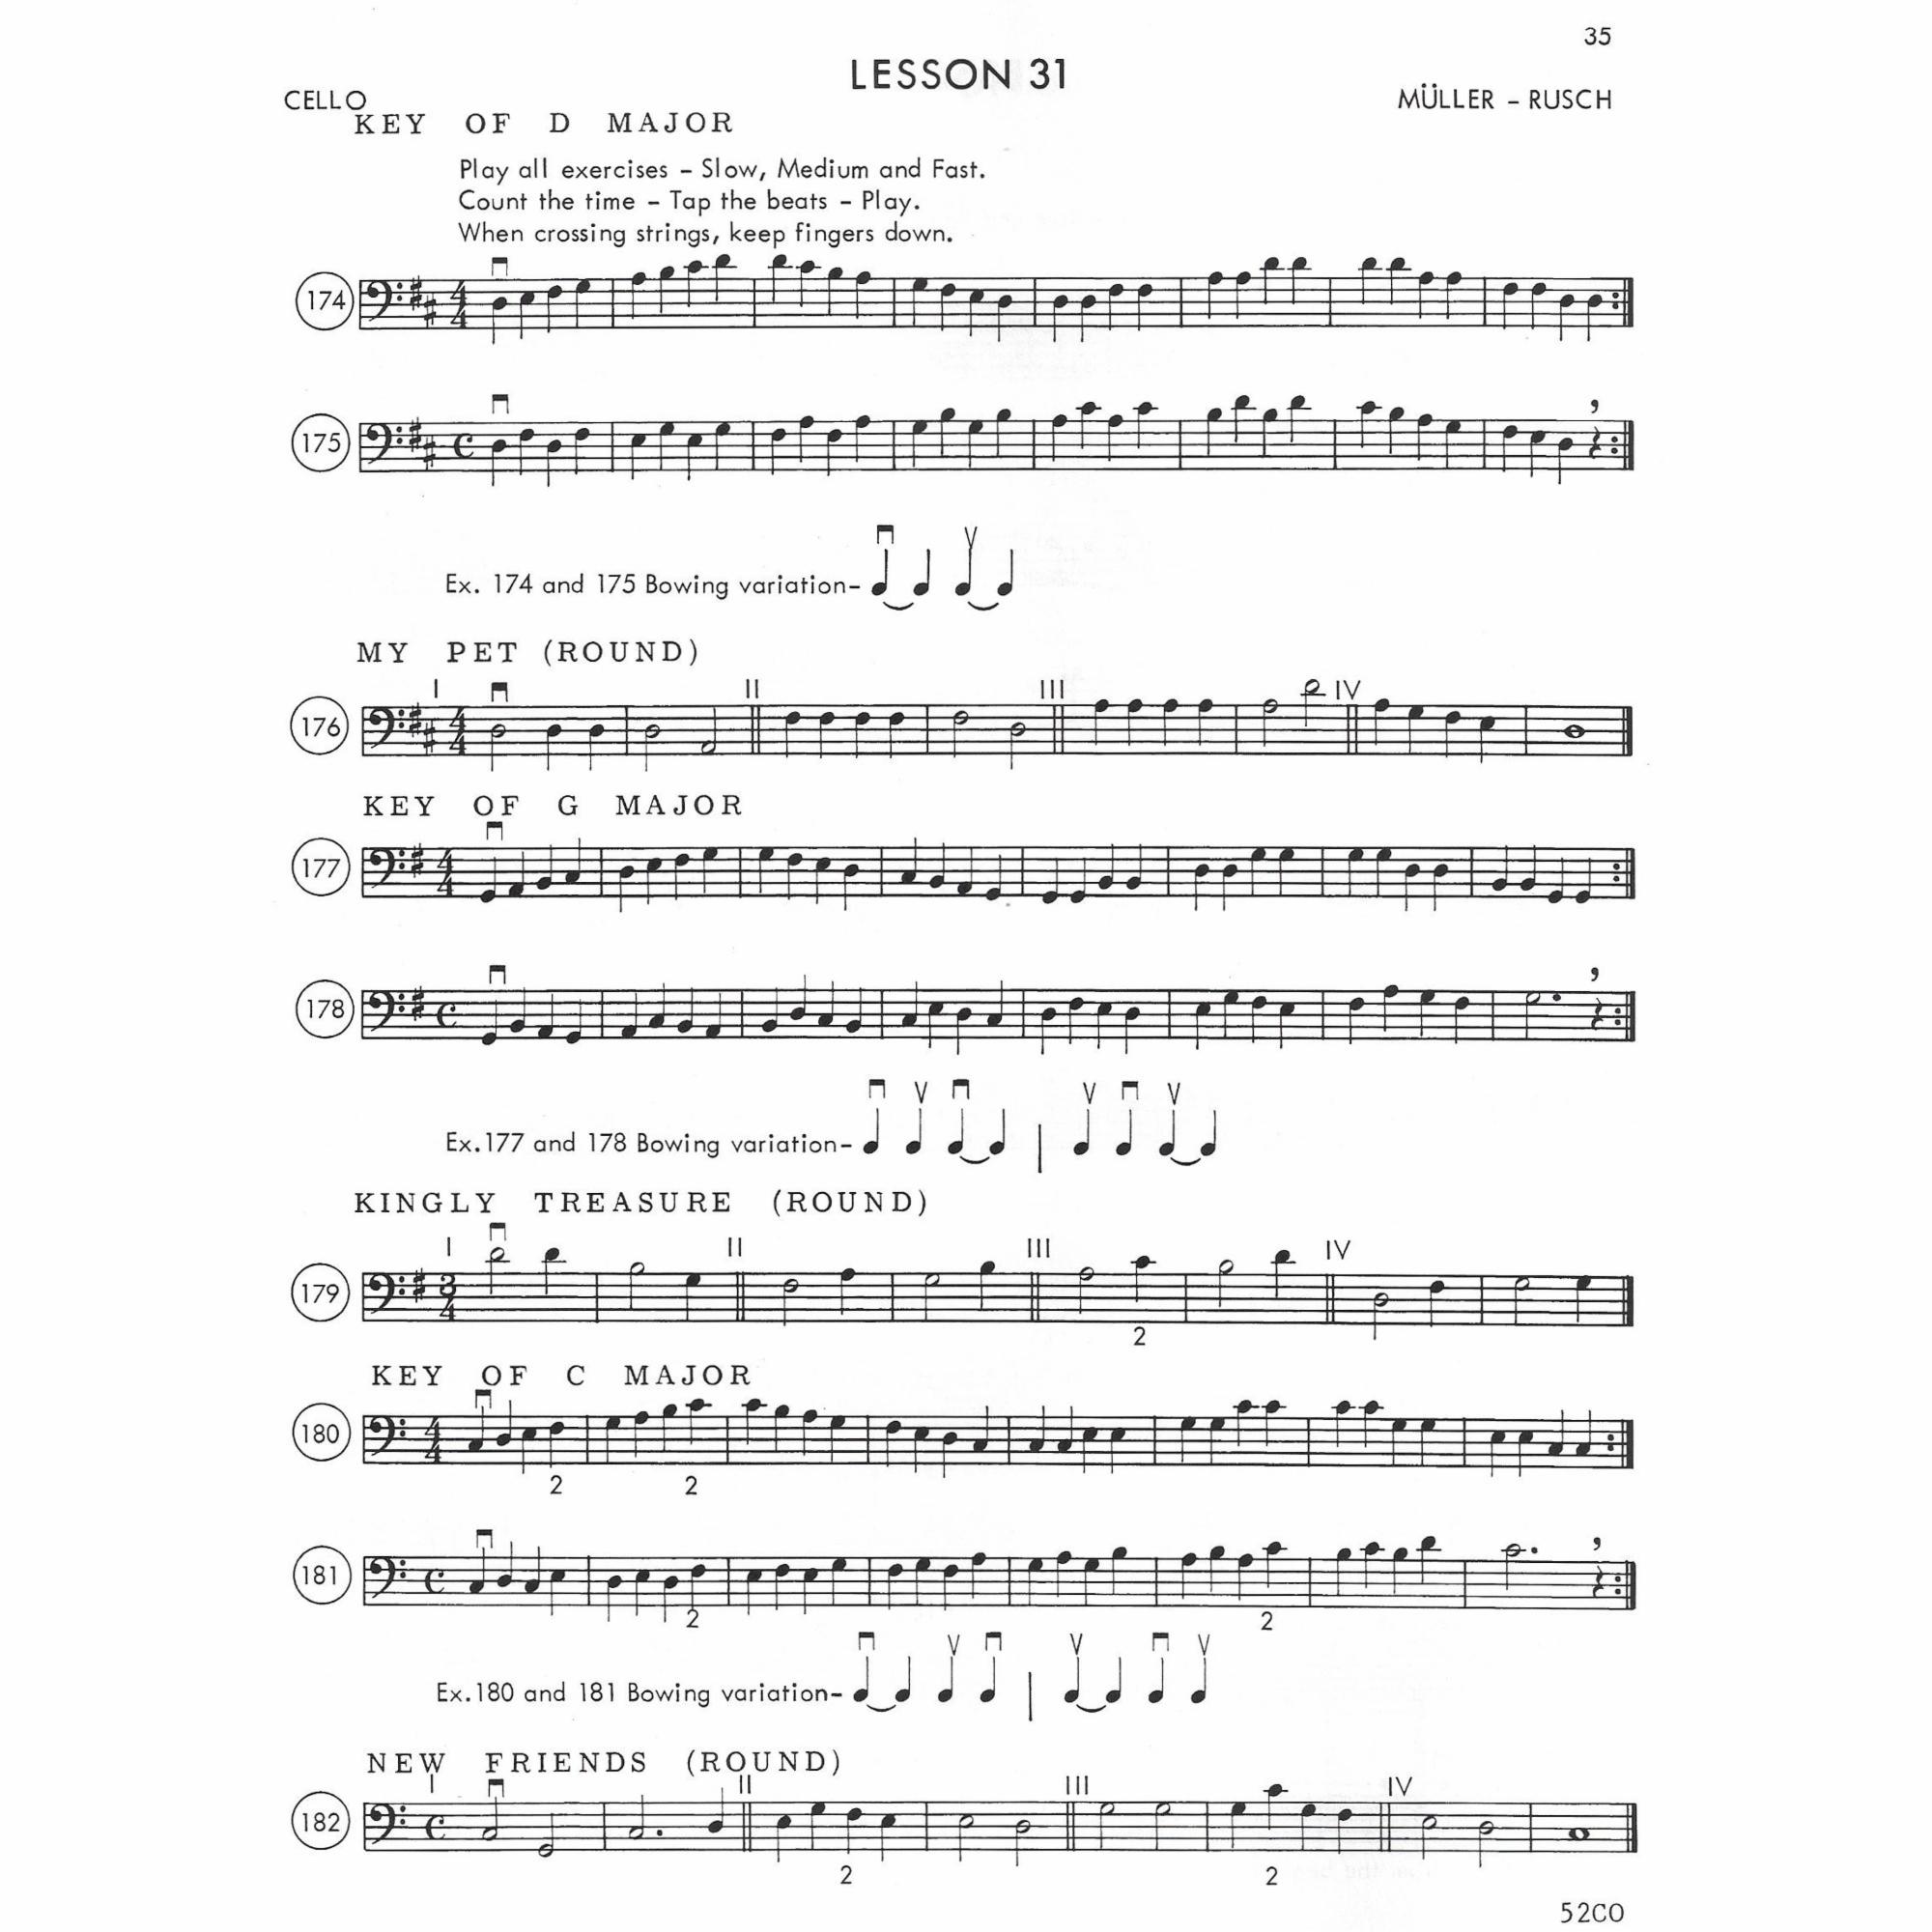 Sample: Cello (Pg. 2/35)